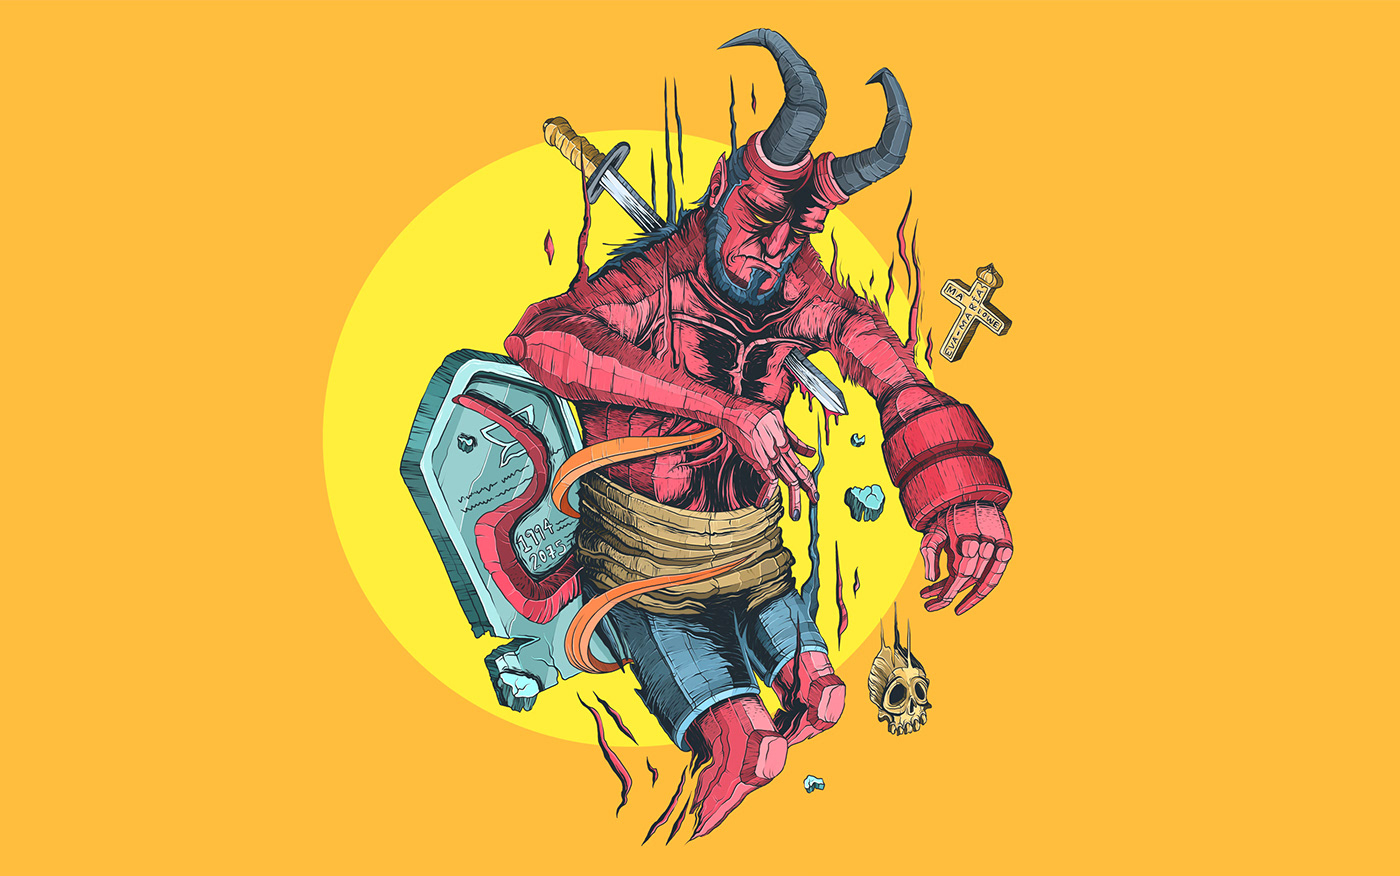 Hellboy INFIERNO demonio pelicula ilustracion ElIlustrador EMBS Eva María Bula Soto El Ilustrador Marlowe wacom